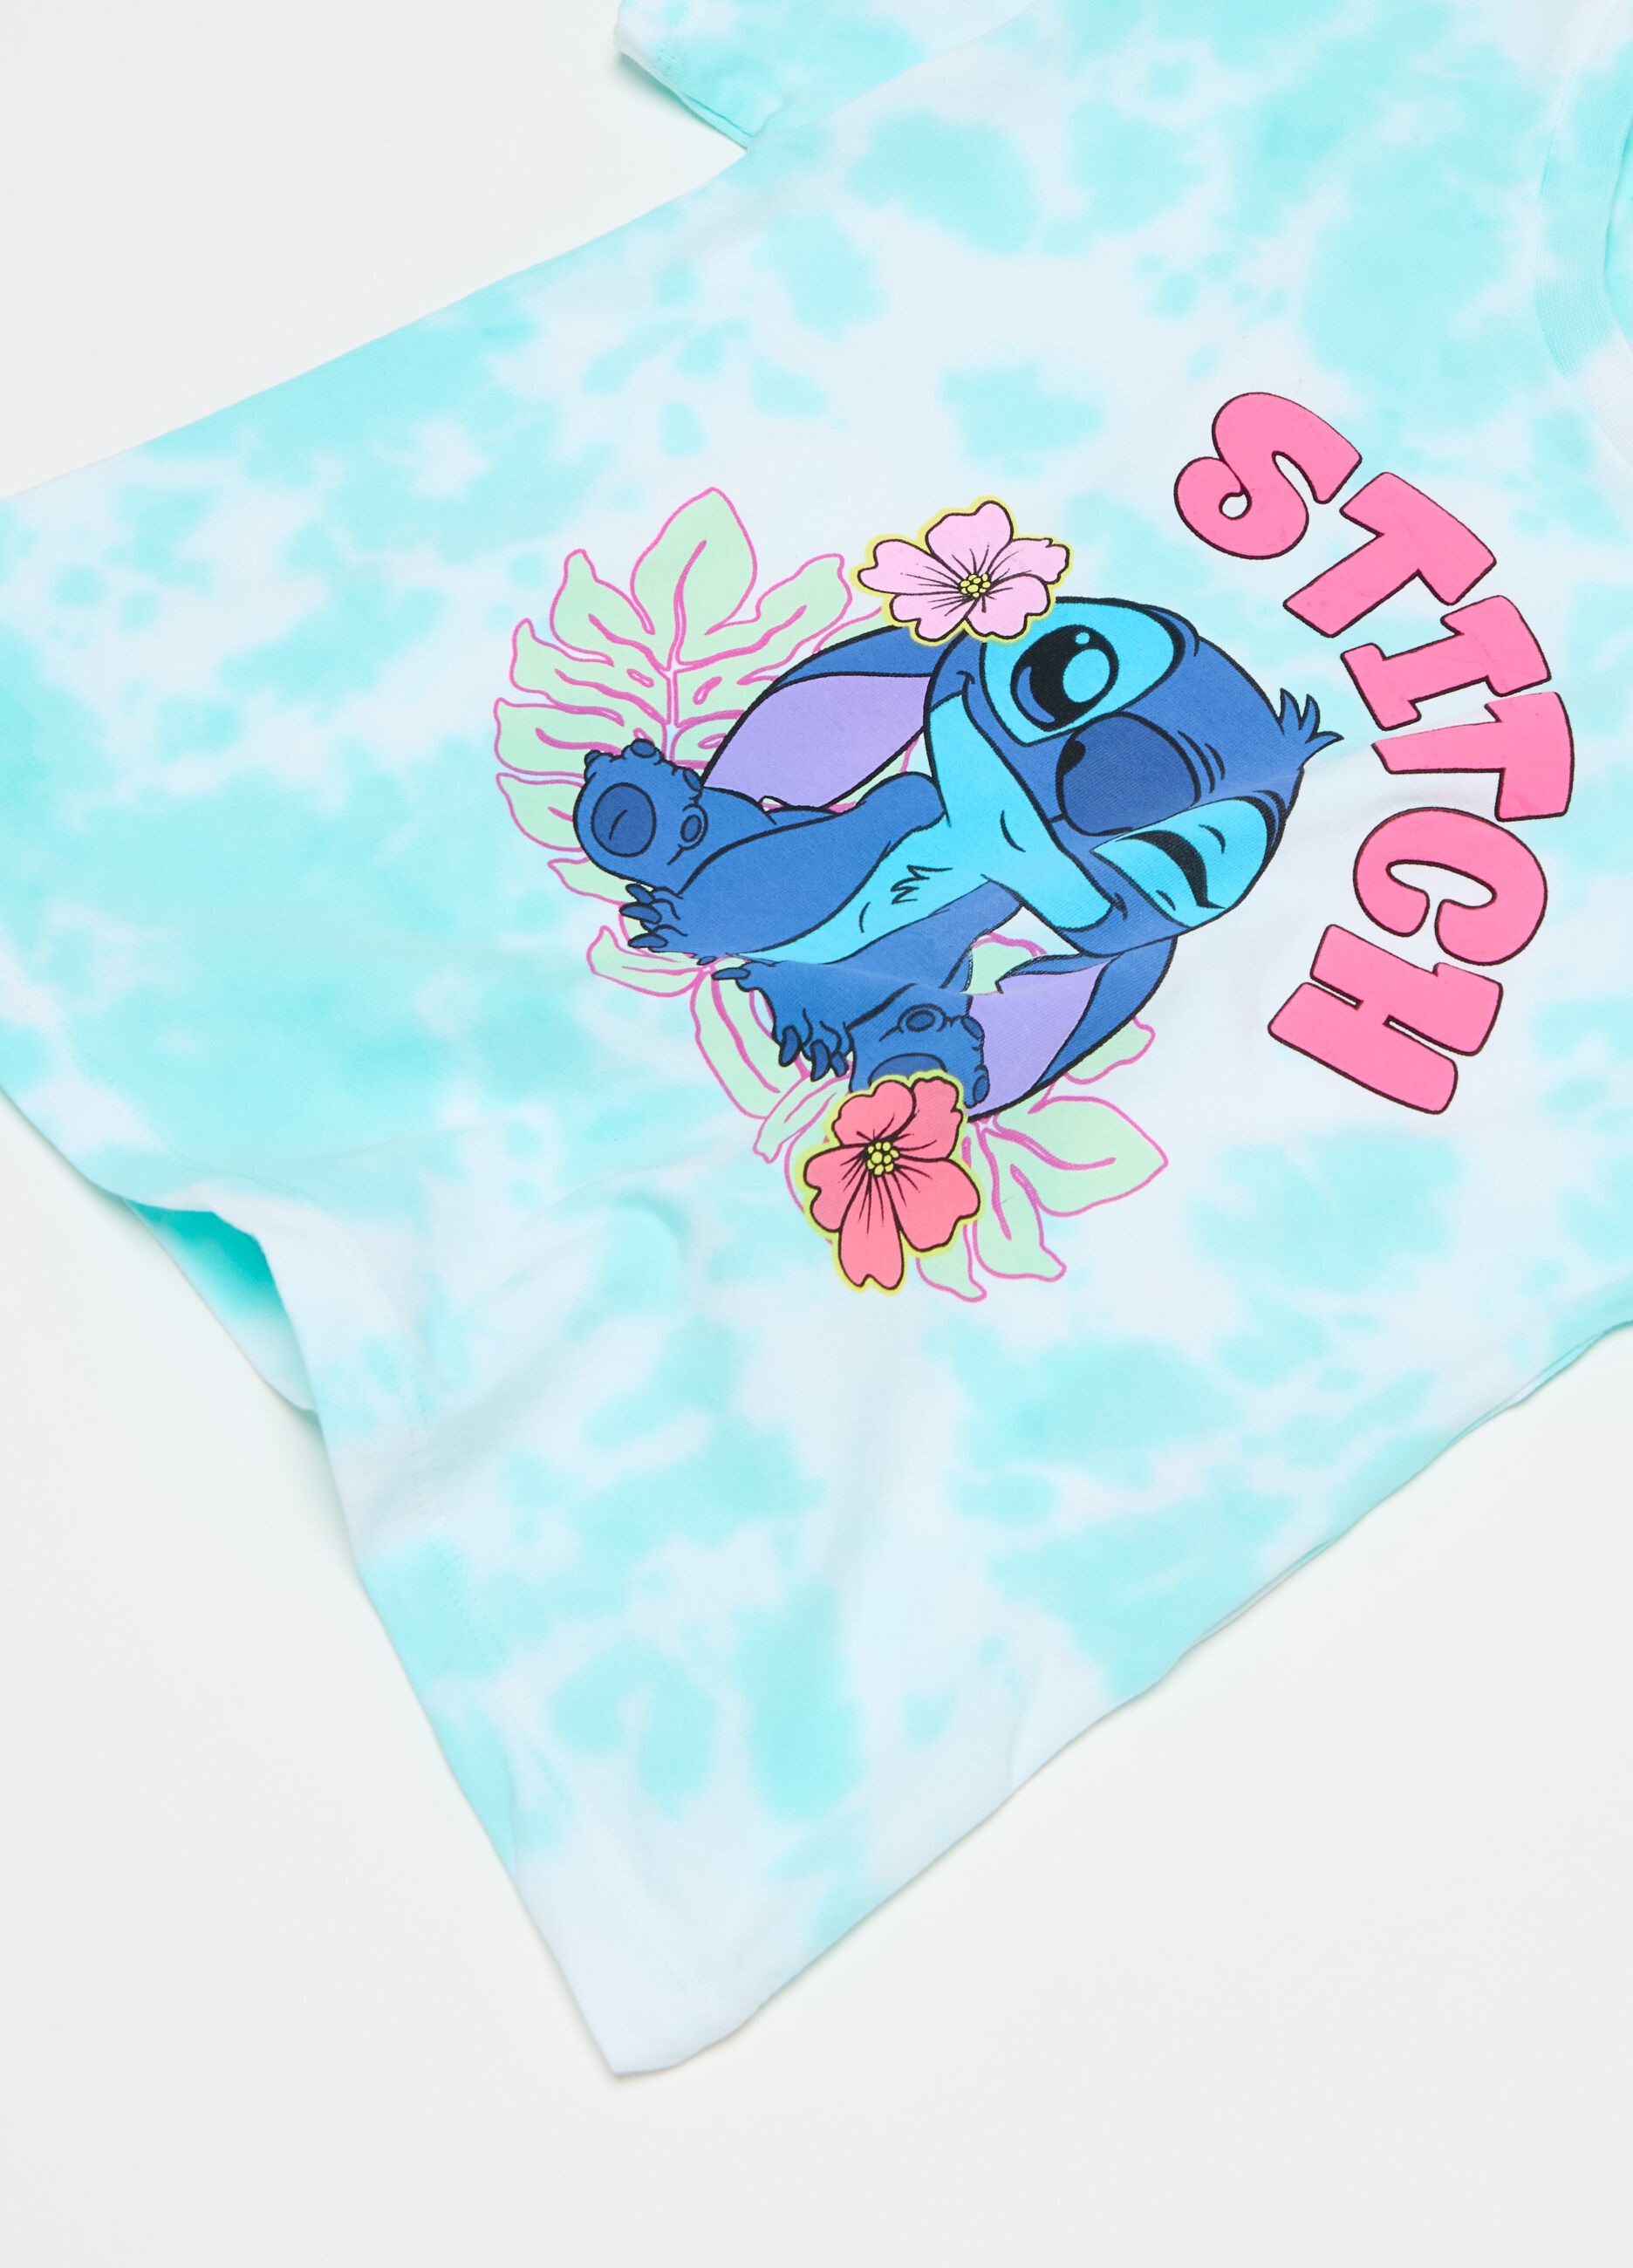 Tie-dye T-shirt with Stitch print